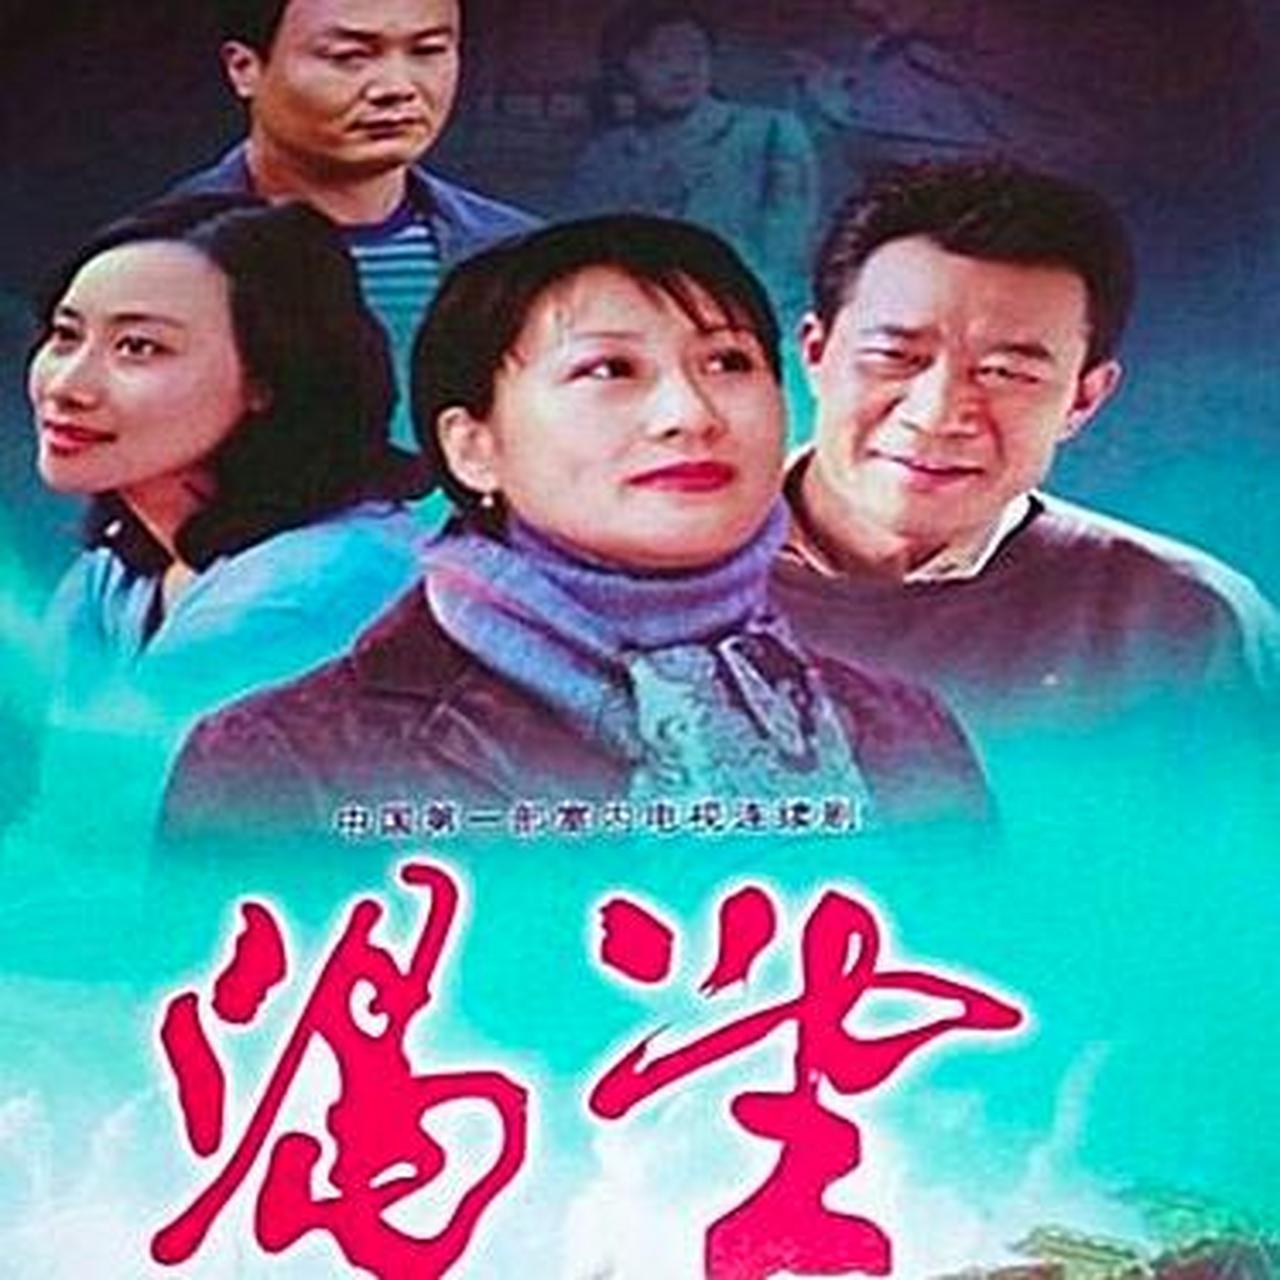 渴望《渴望》这是中国第一部万人空巷的电视剧,影响了两代人,把一个